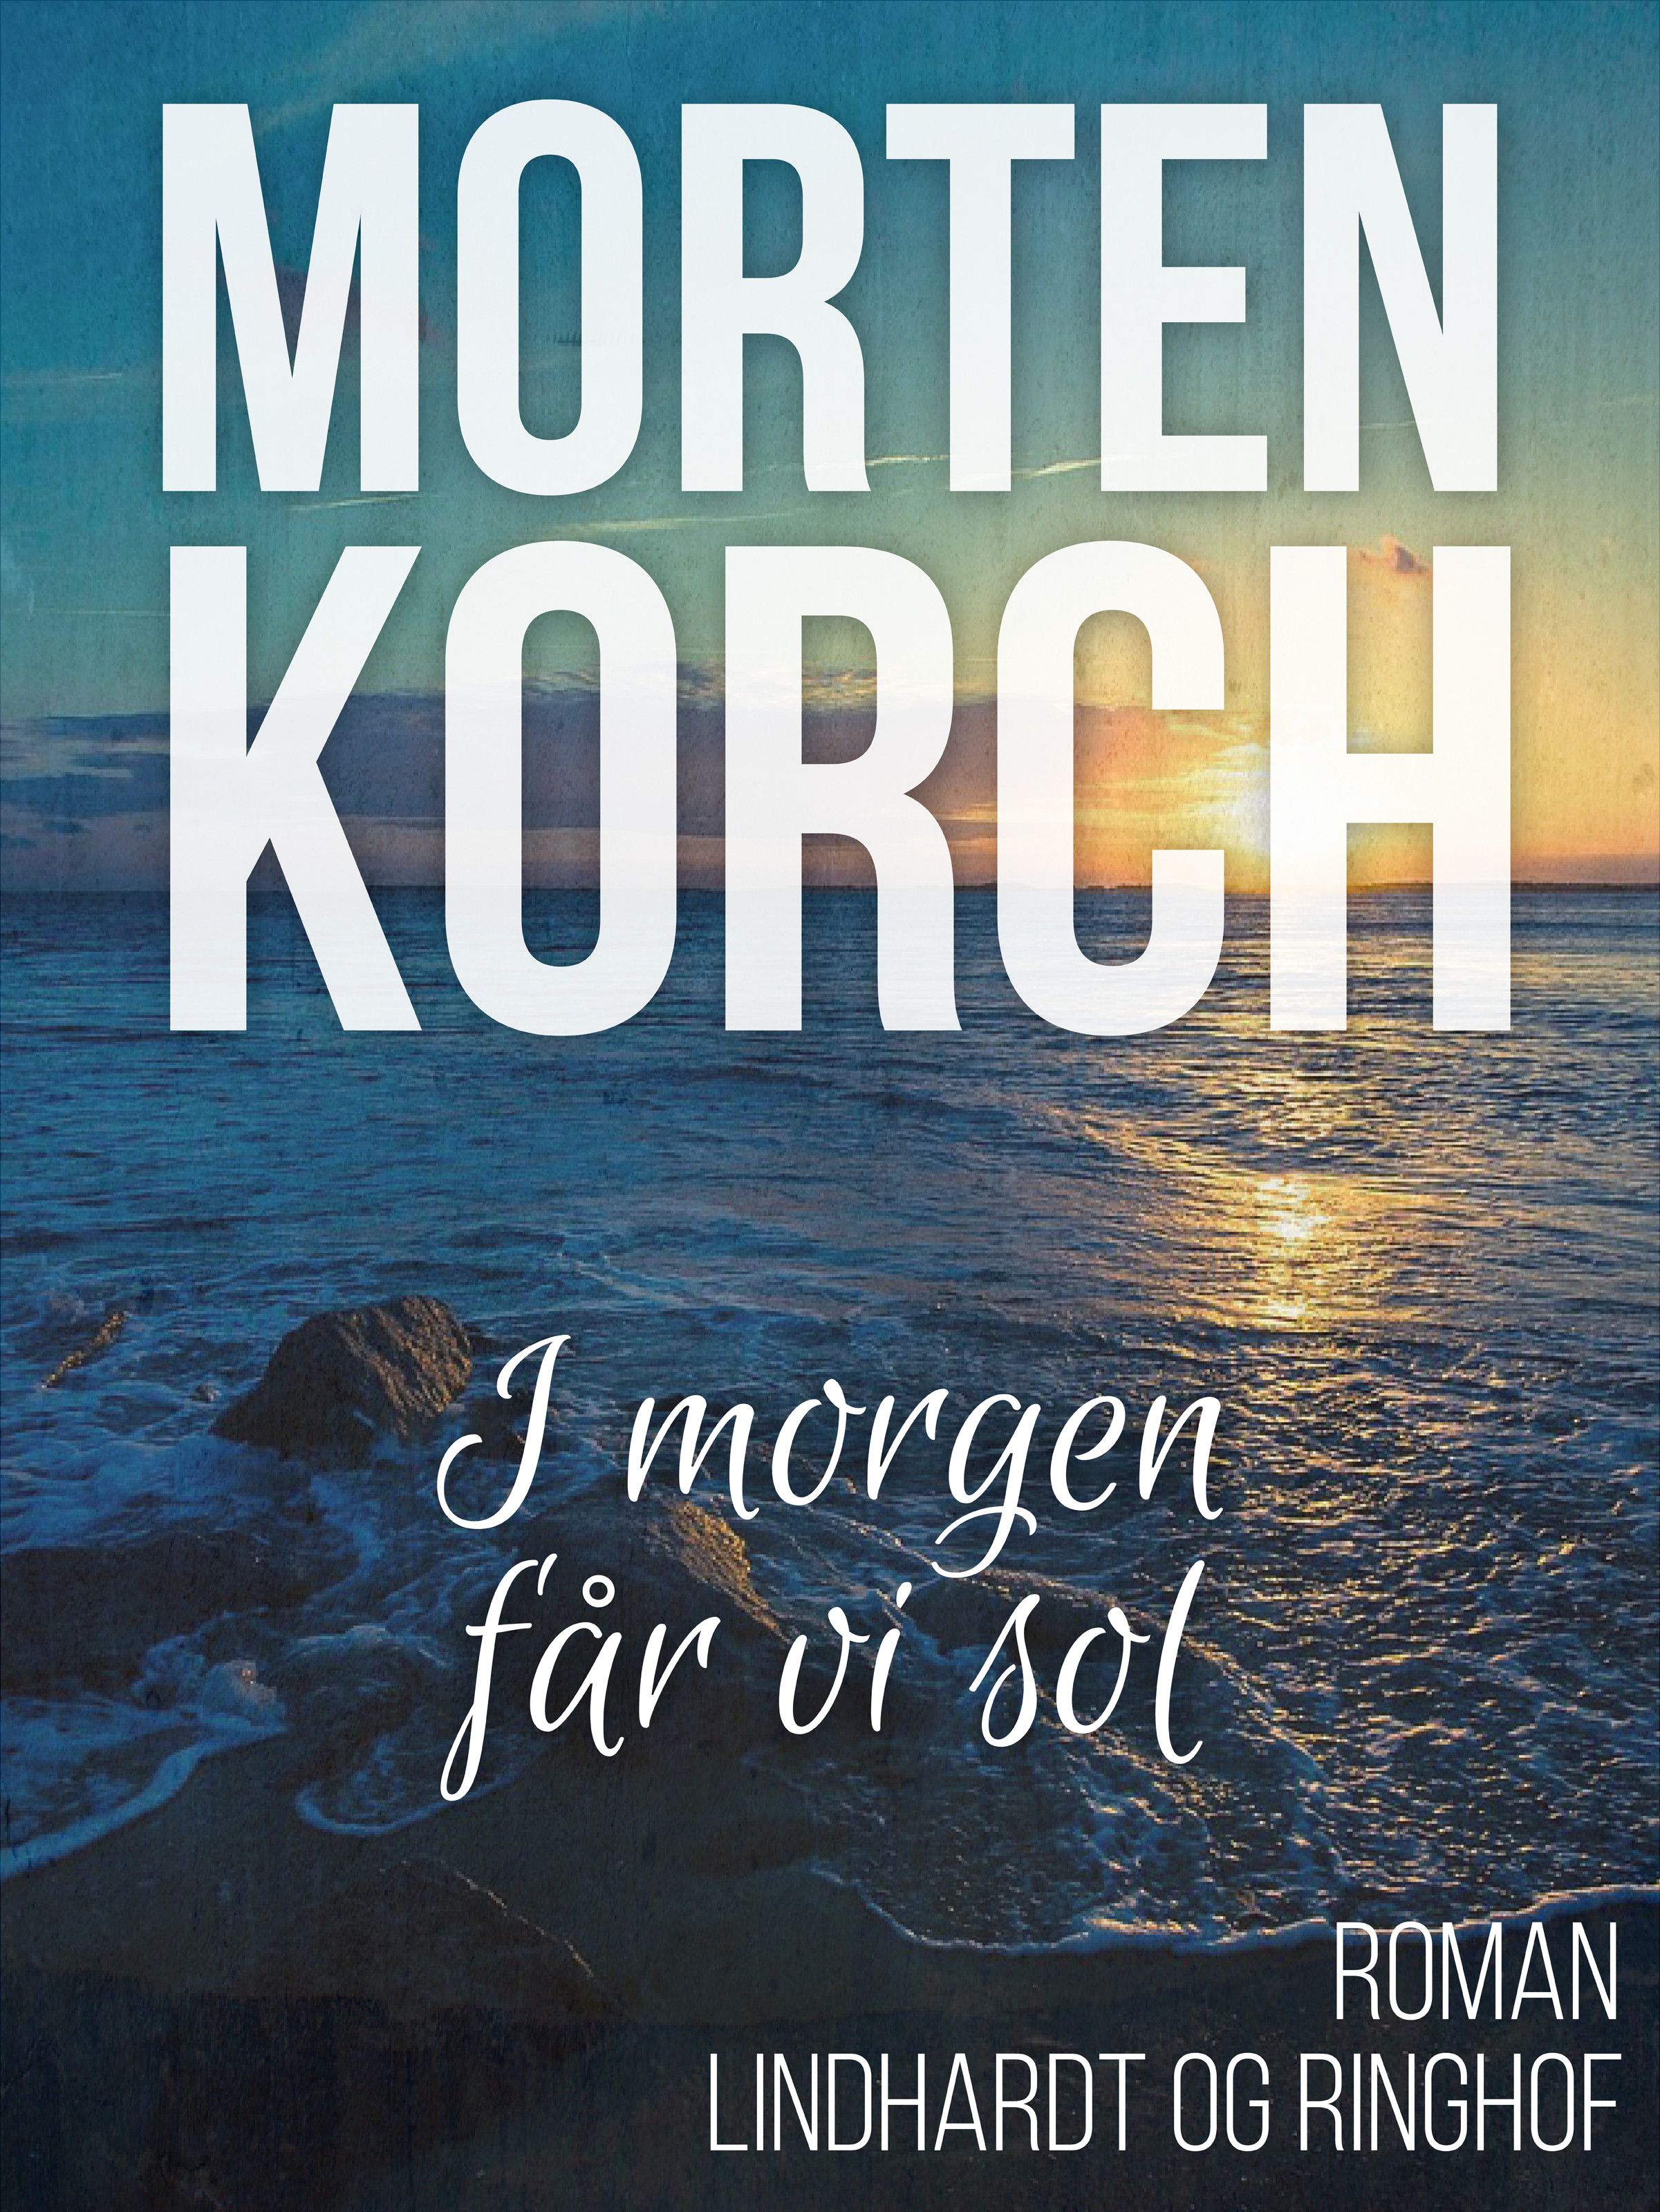 I morgen får vi sol, ljudbok av Morten Korch